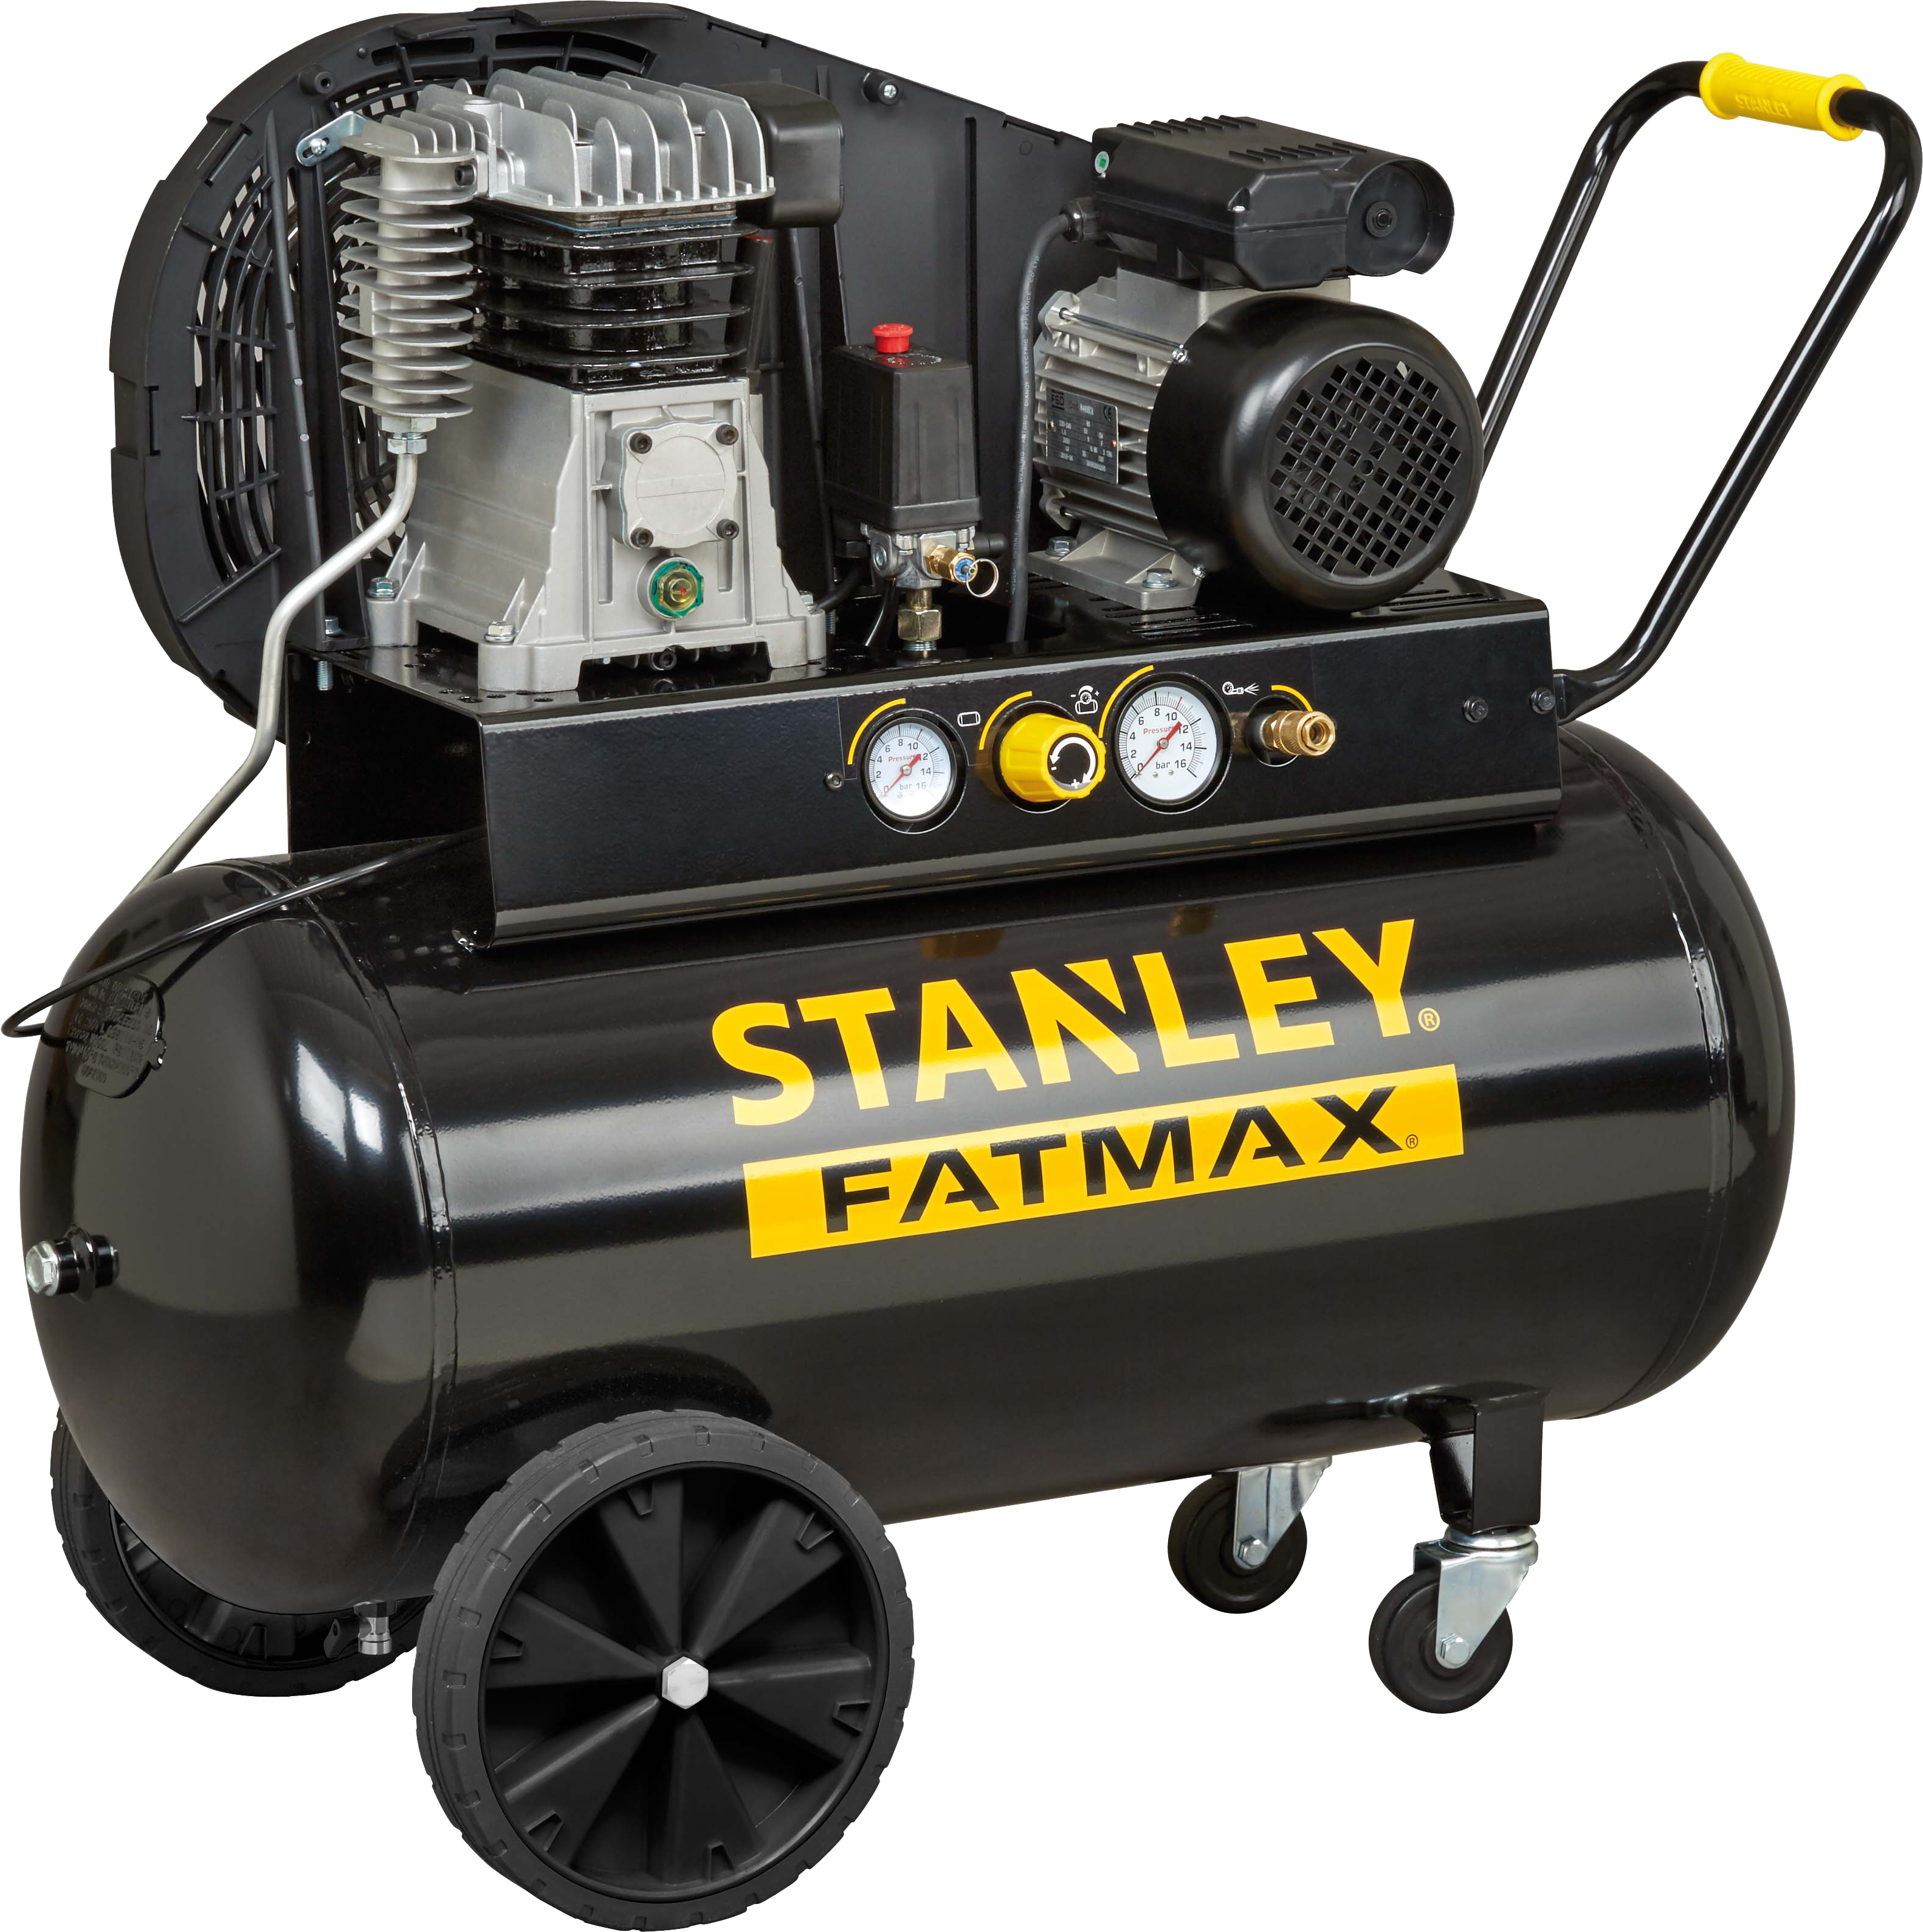 Compresor correas stanley fatmax b350/10/100 de 3 cv y 100l de depósito